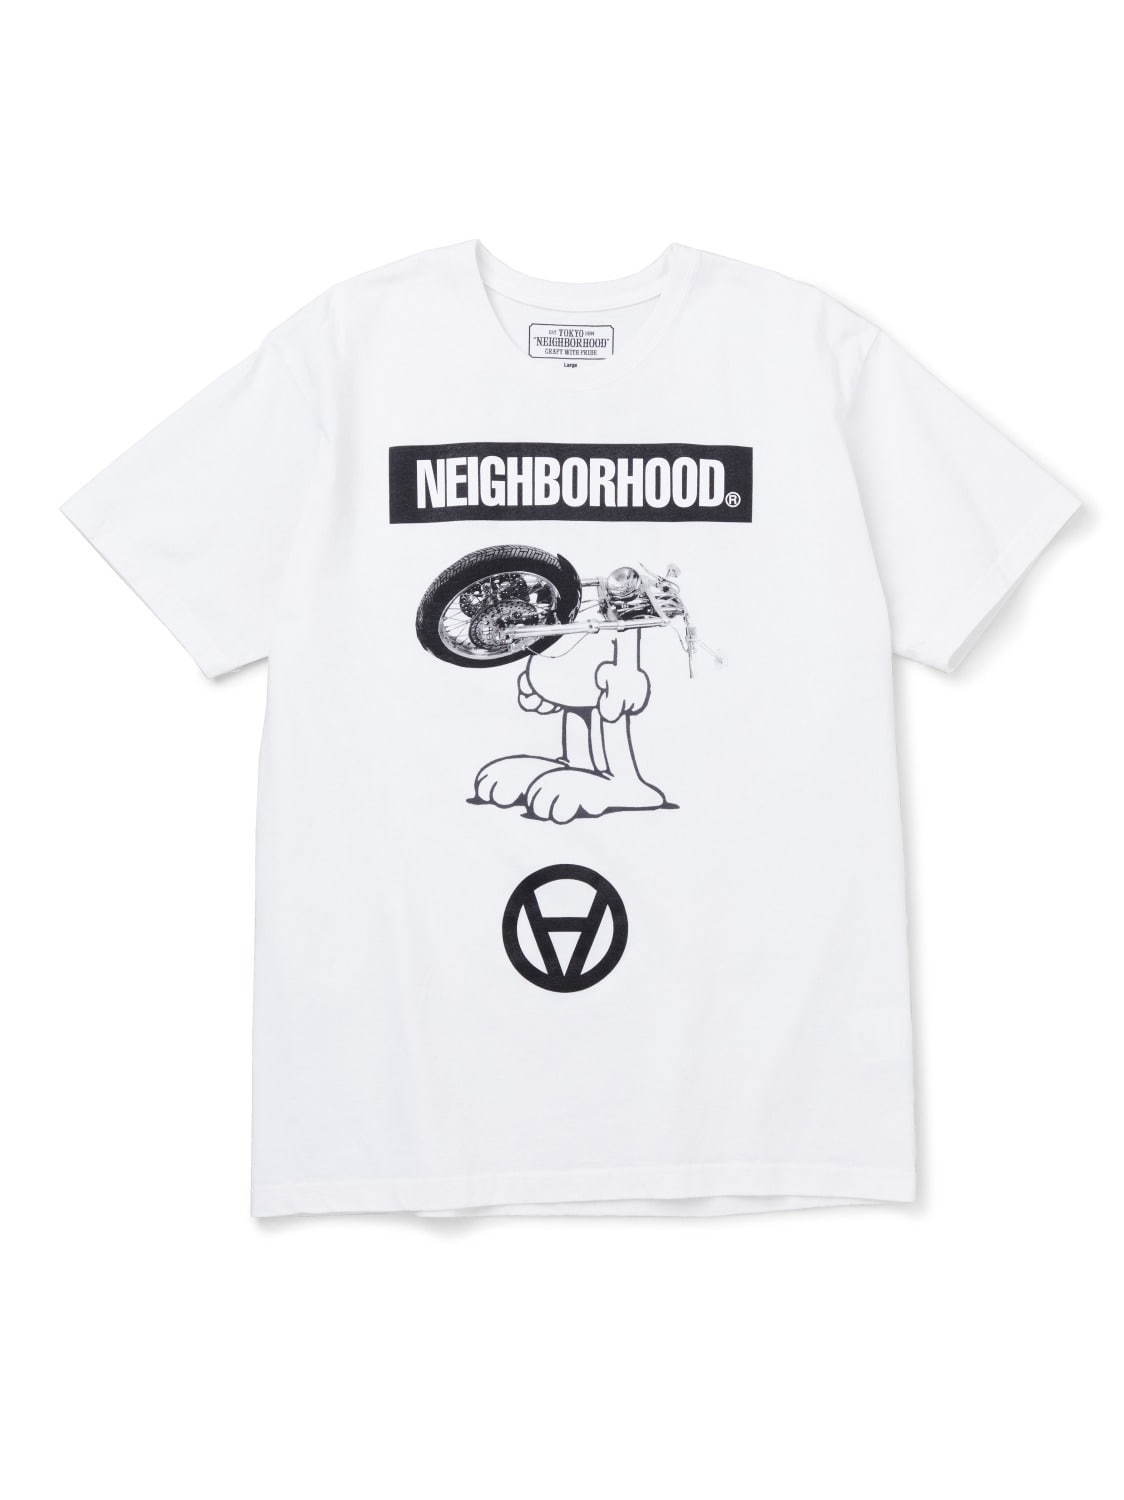 〈ネイバーフッド〉NYのアーティスト・コスタス・セレメティスコラボプリントTシャツ